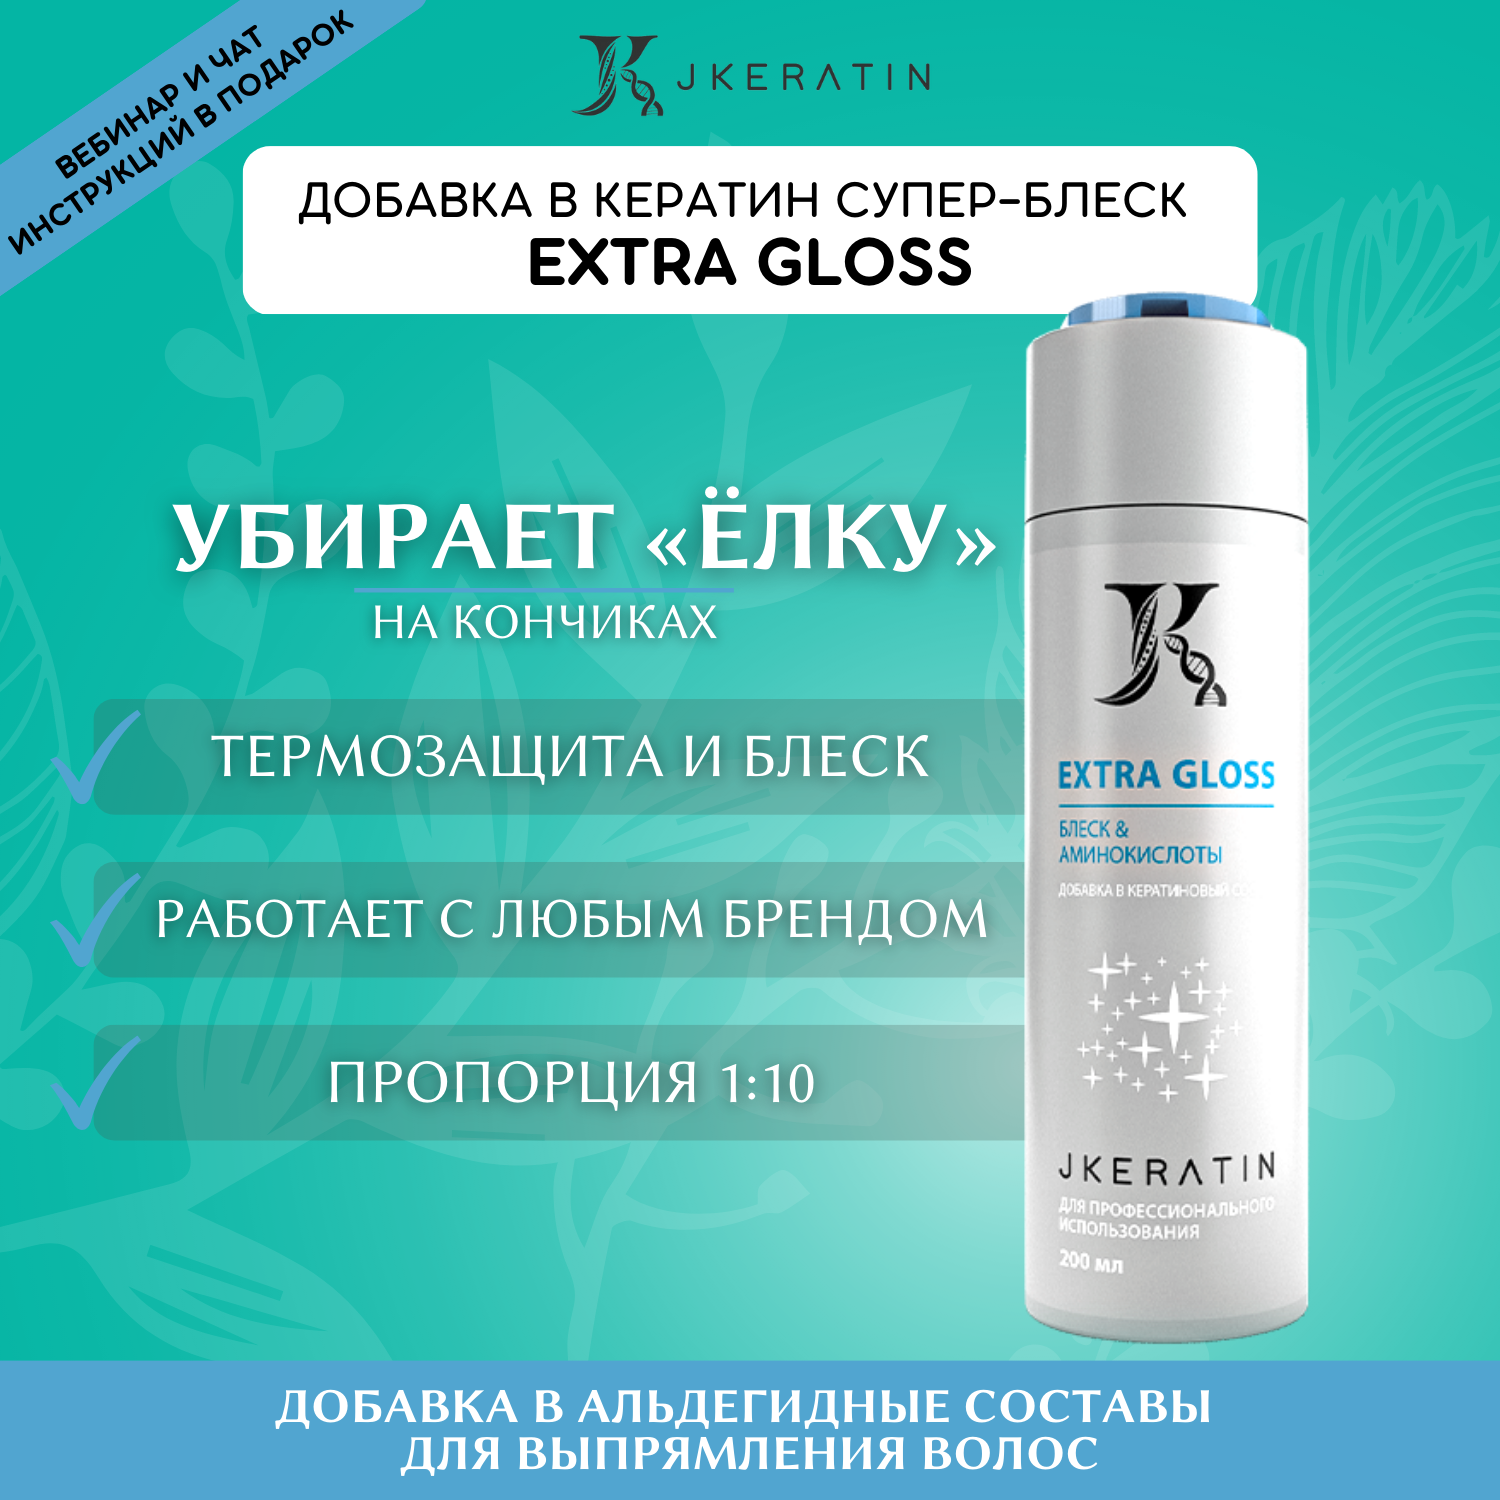 JKeratin Extra Gloss - средство для термозащиты и блеска волос 200 мл / восстановление волос / добавка в кератин